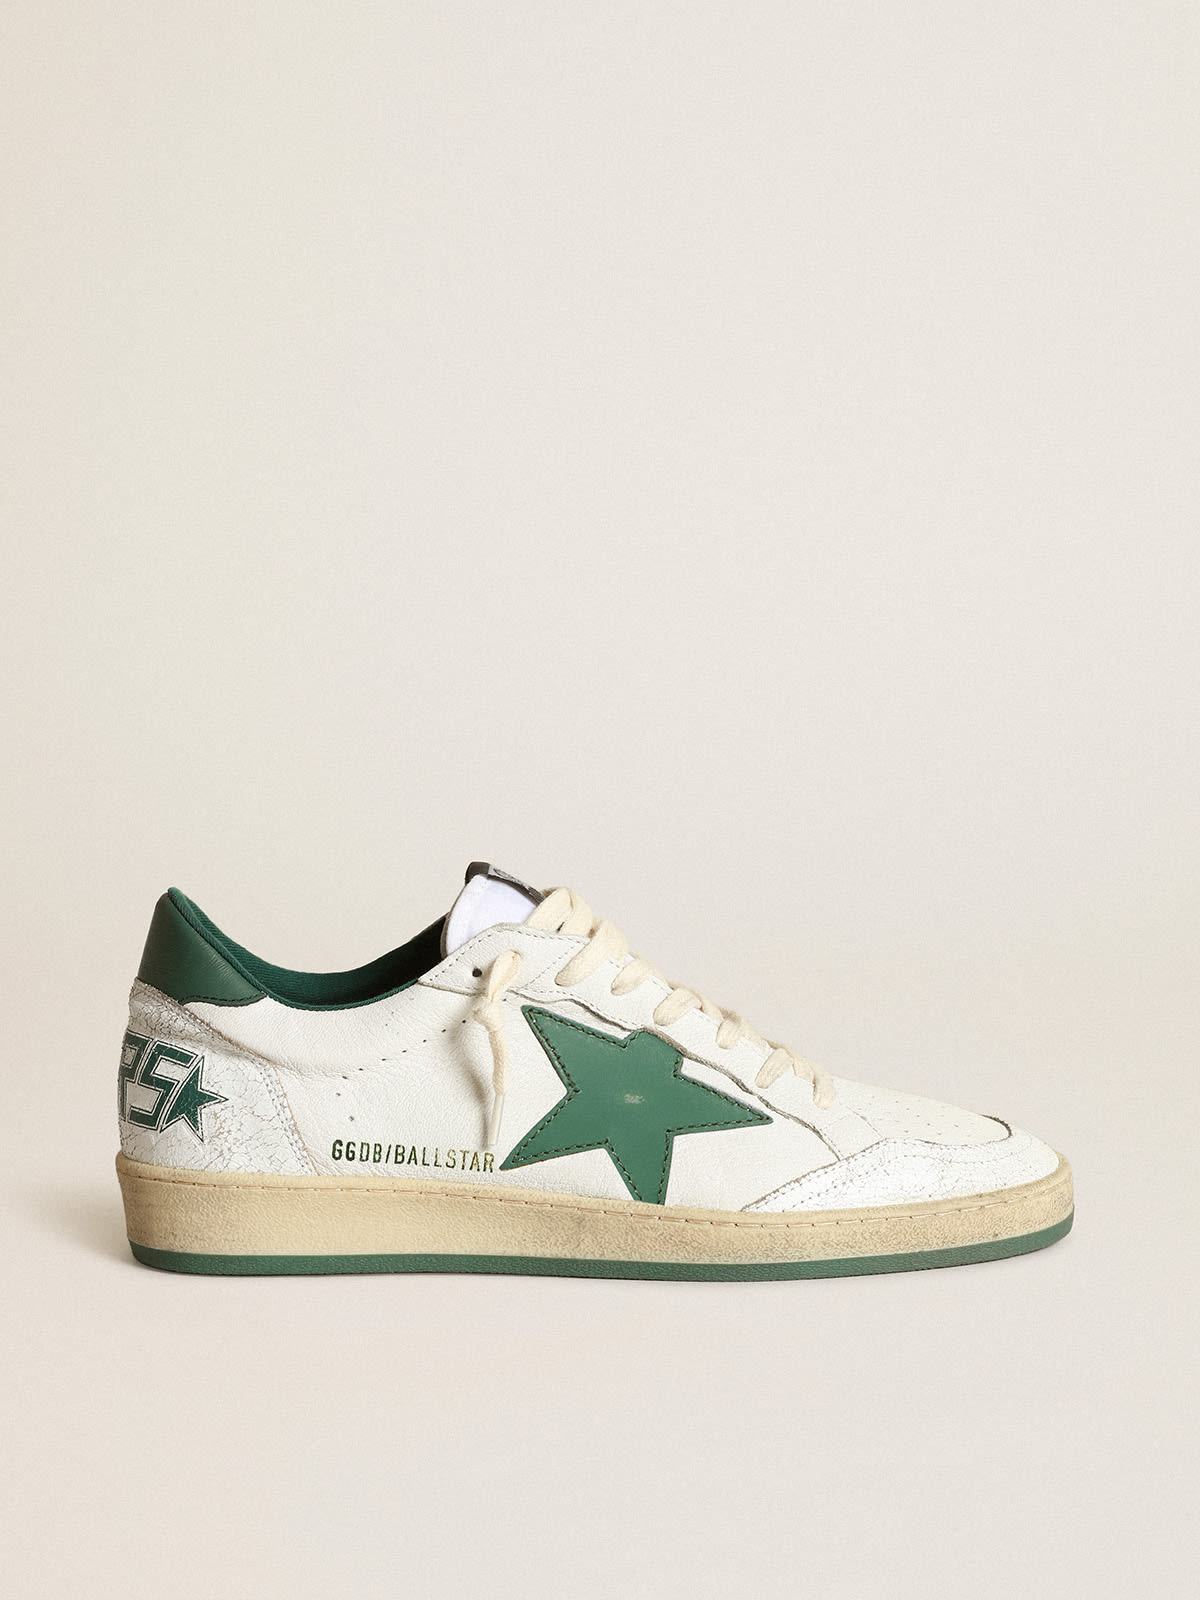 Zapatillas deportivas Ball Star de napa blanca con estrella y refuerzo del talón de piel verde